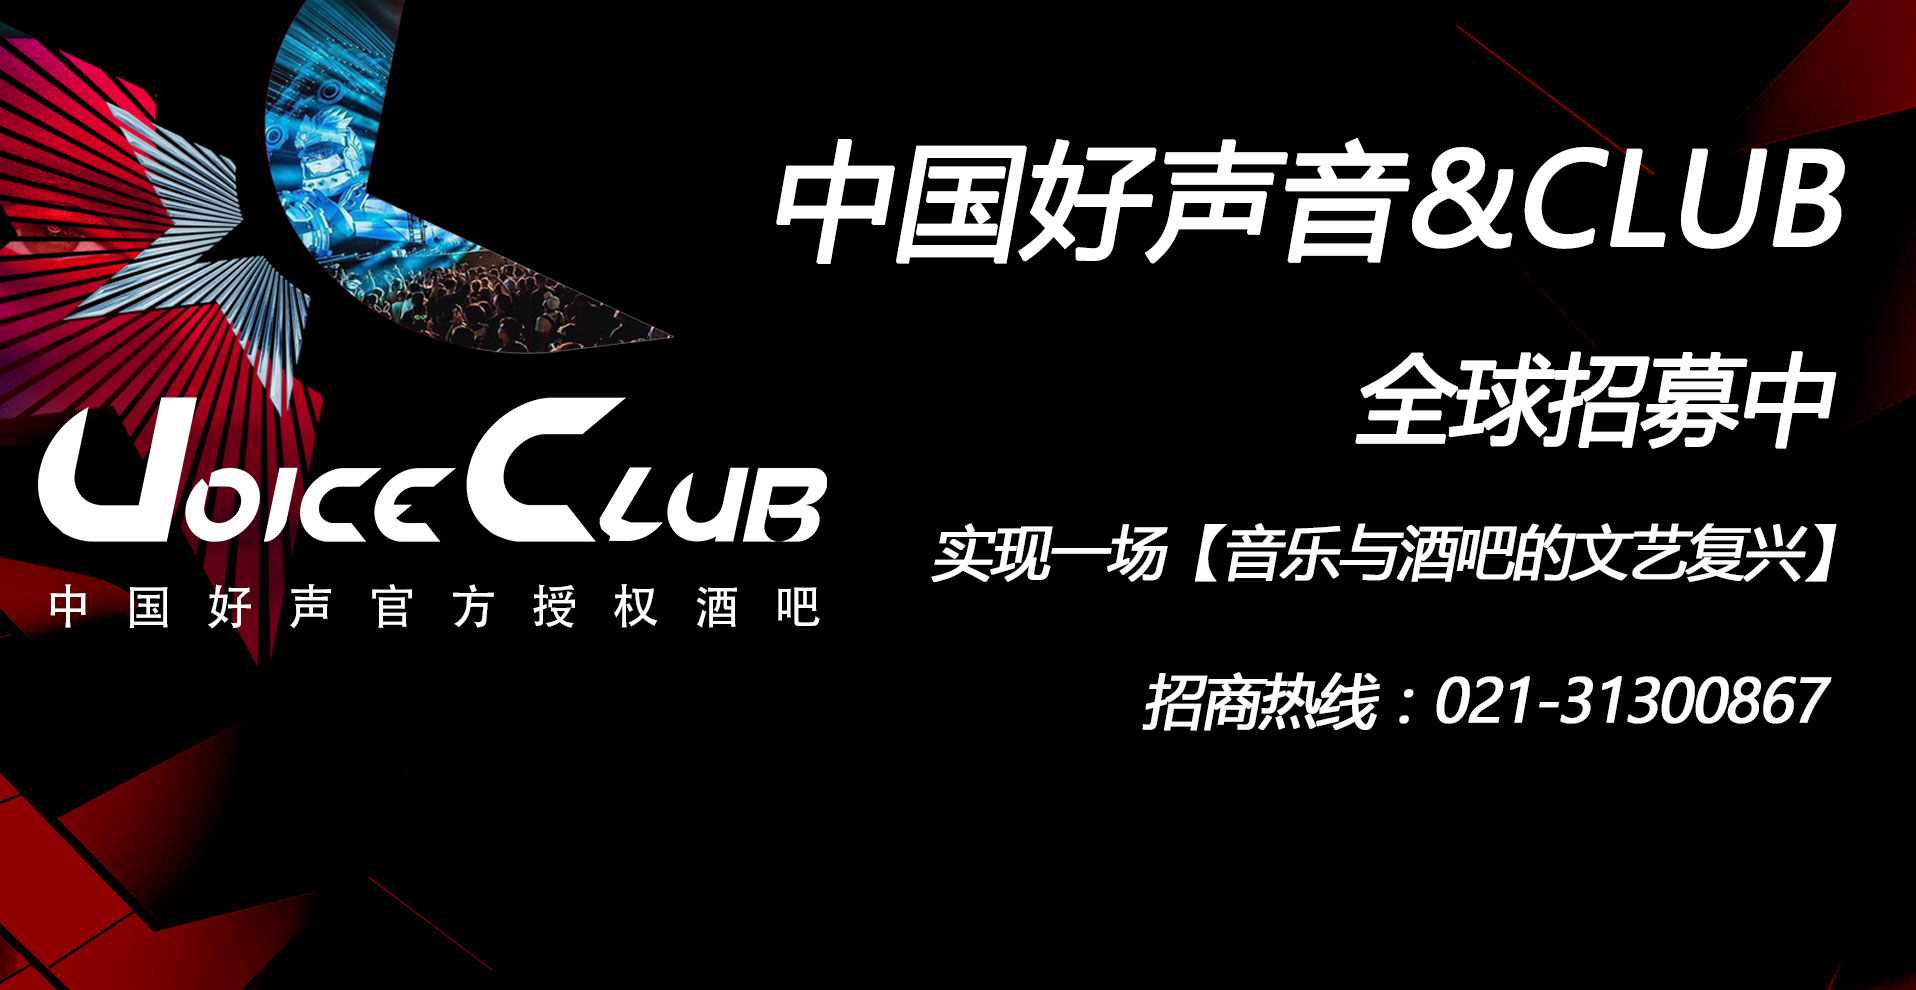 中国好声音酒吧Voice Club杭州店已盛大开业！